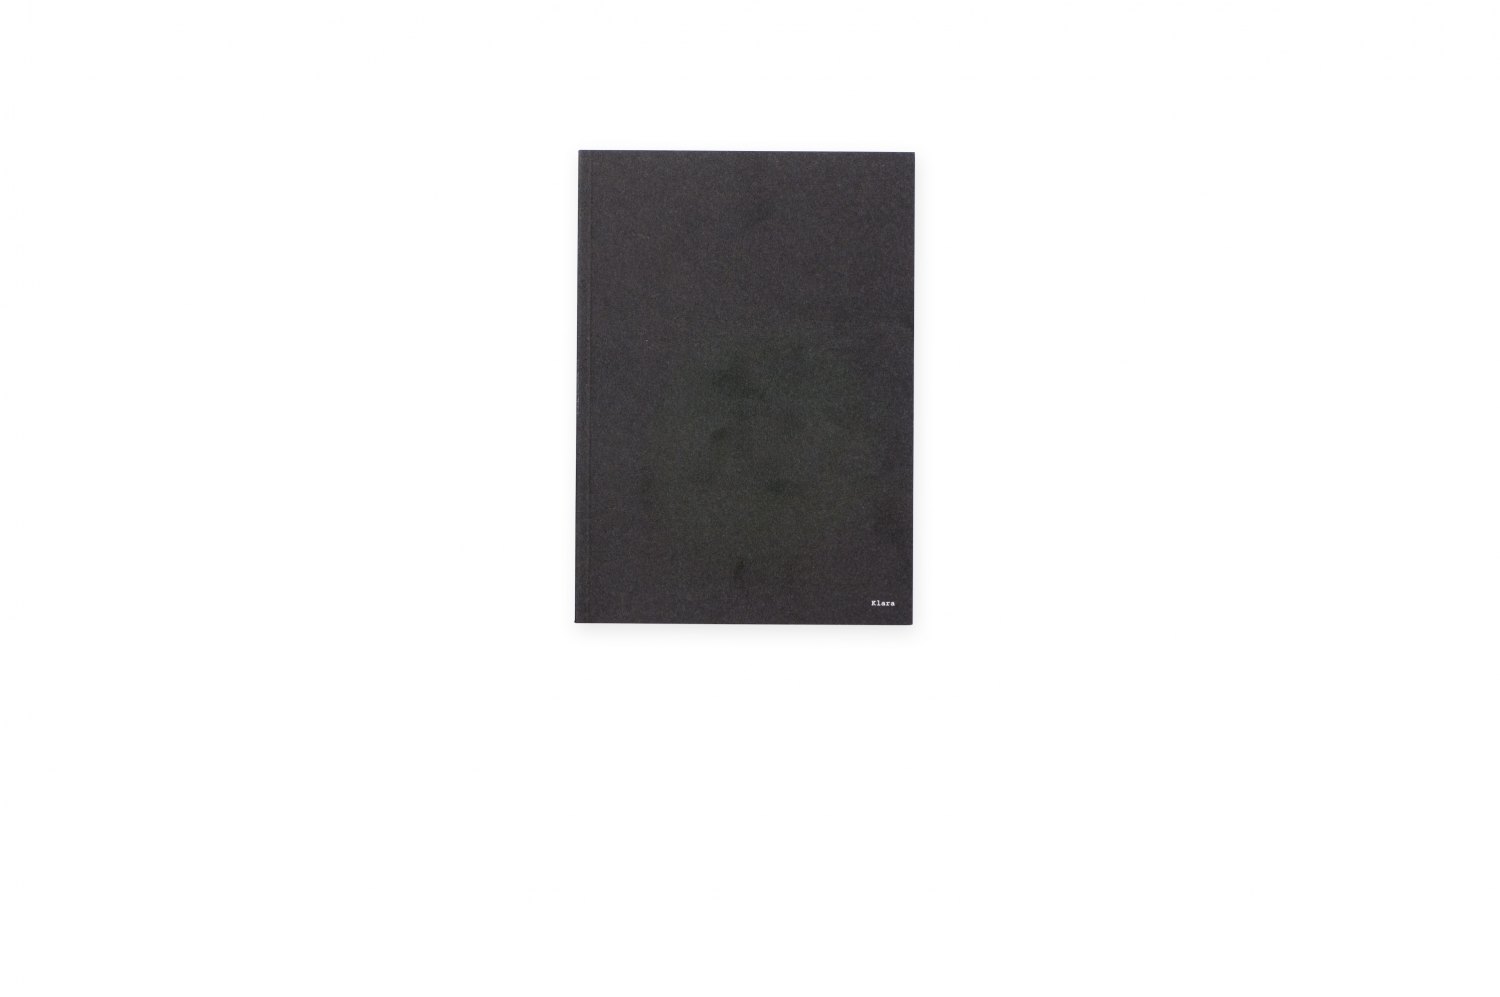 Klara Lidén, Non-solo show, Non-group show Catalogue, Kunsthalle, Zurich 2009/10, 236 p. ISBN 978-3-00031-391-2